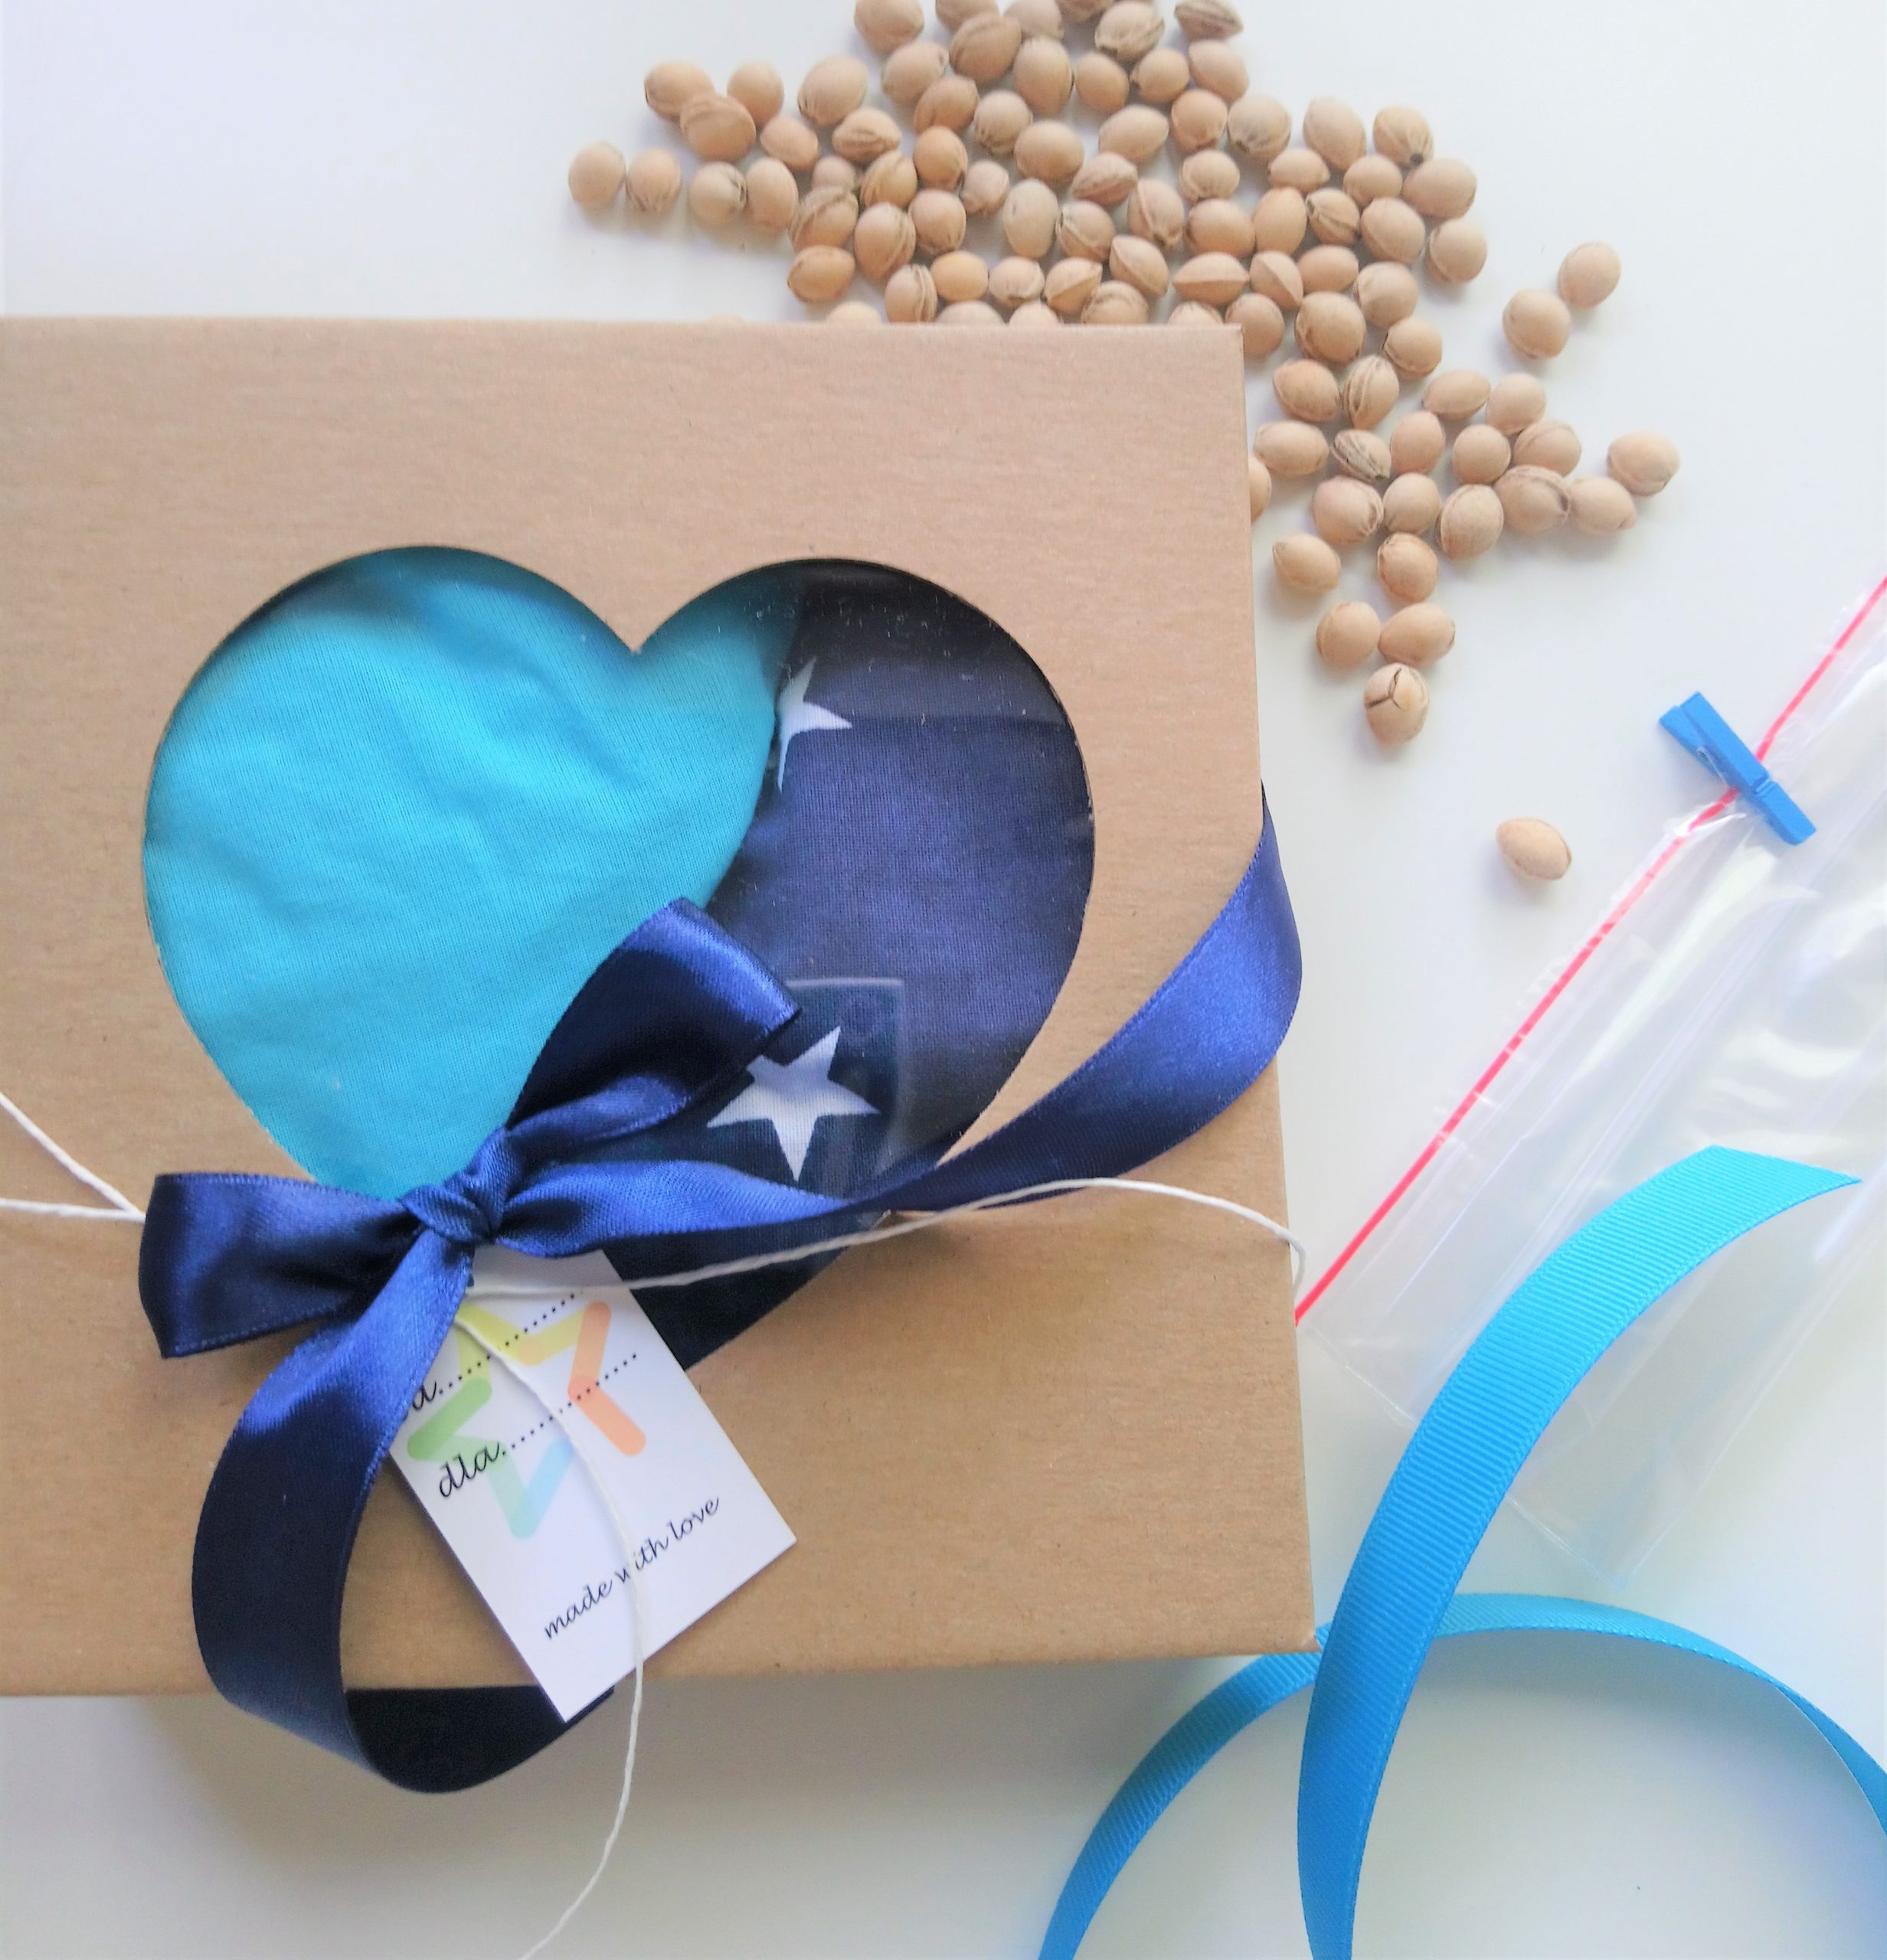 Ekologiczny termofor z pestką wiśni pomysł na prezent dla niemowlaka pomysł na prezent suchy termofor łagodzeniu bólu